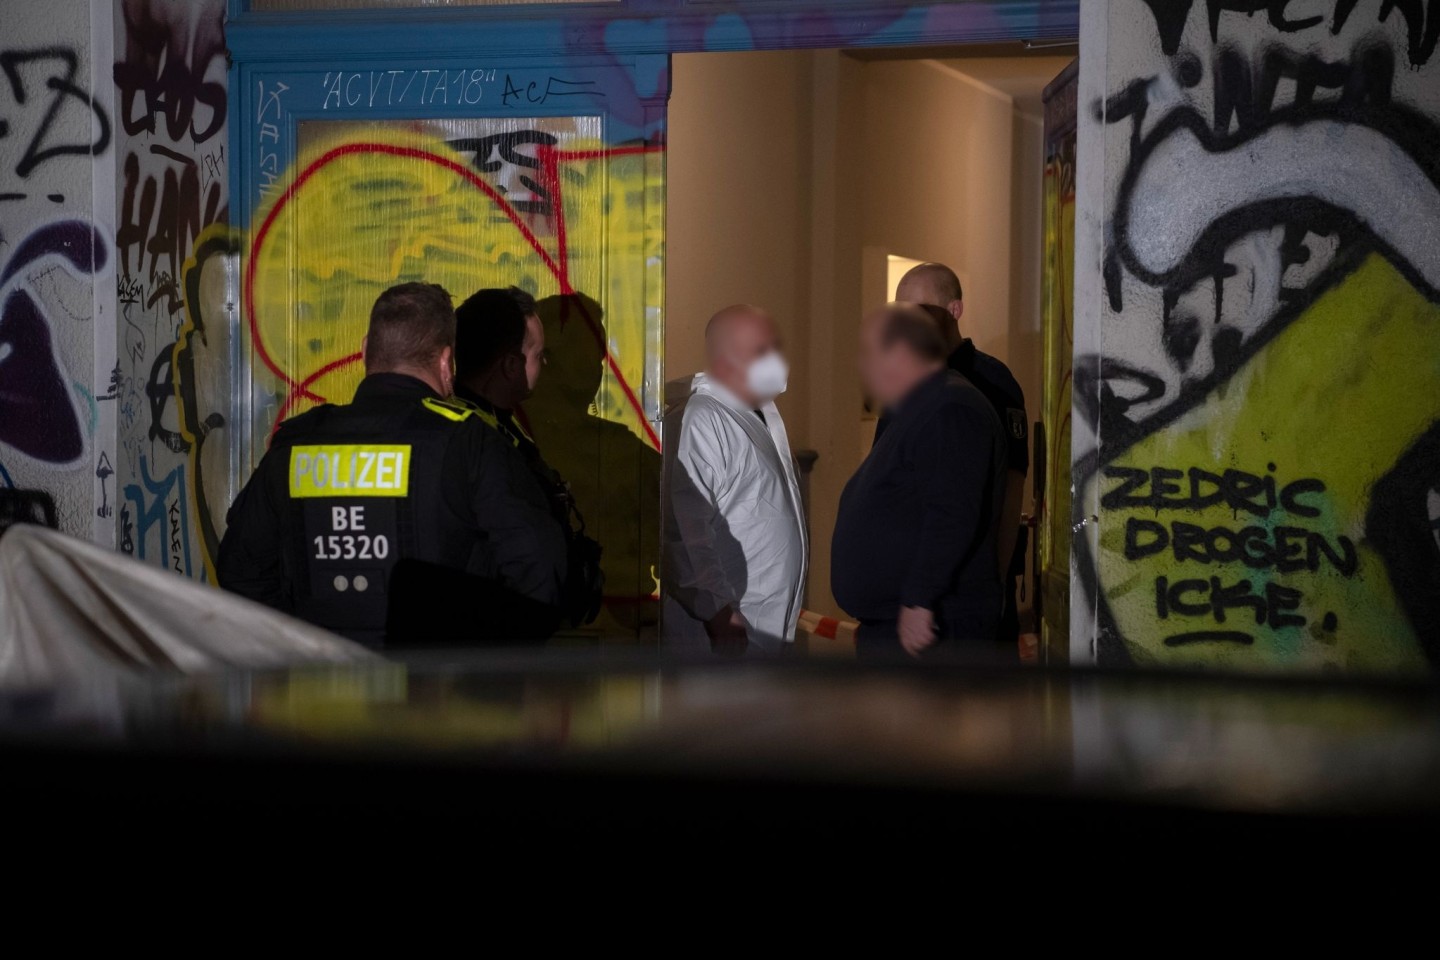 In diesem Wohnhaus in Berlin-Friedrichshain ist eine Frau vermutlich getötet worden. Wegen der Umstände und Verletzungen geht die Polizei von einem Tötungsdelikt aus.